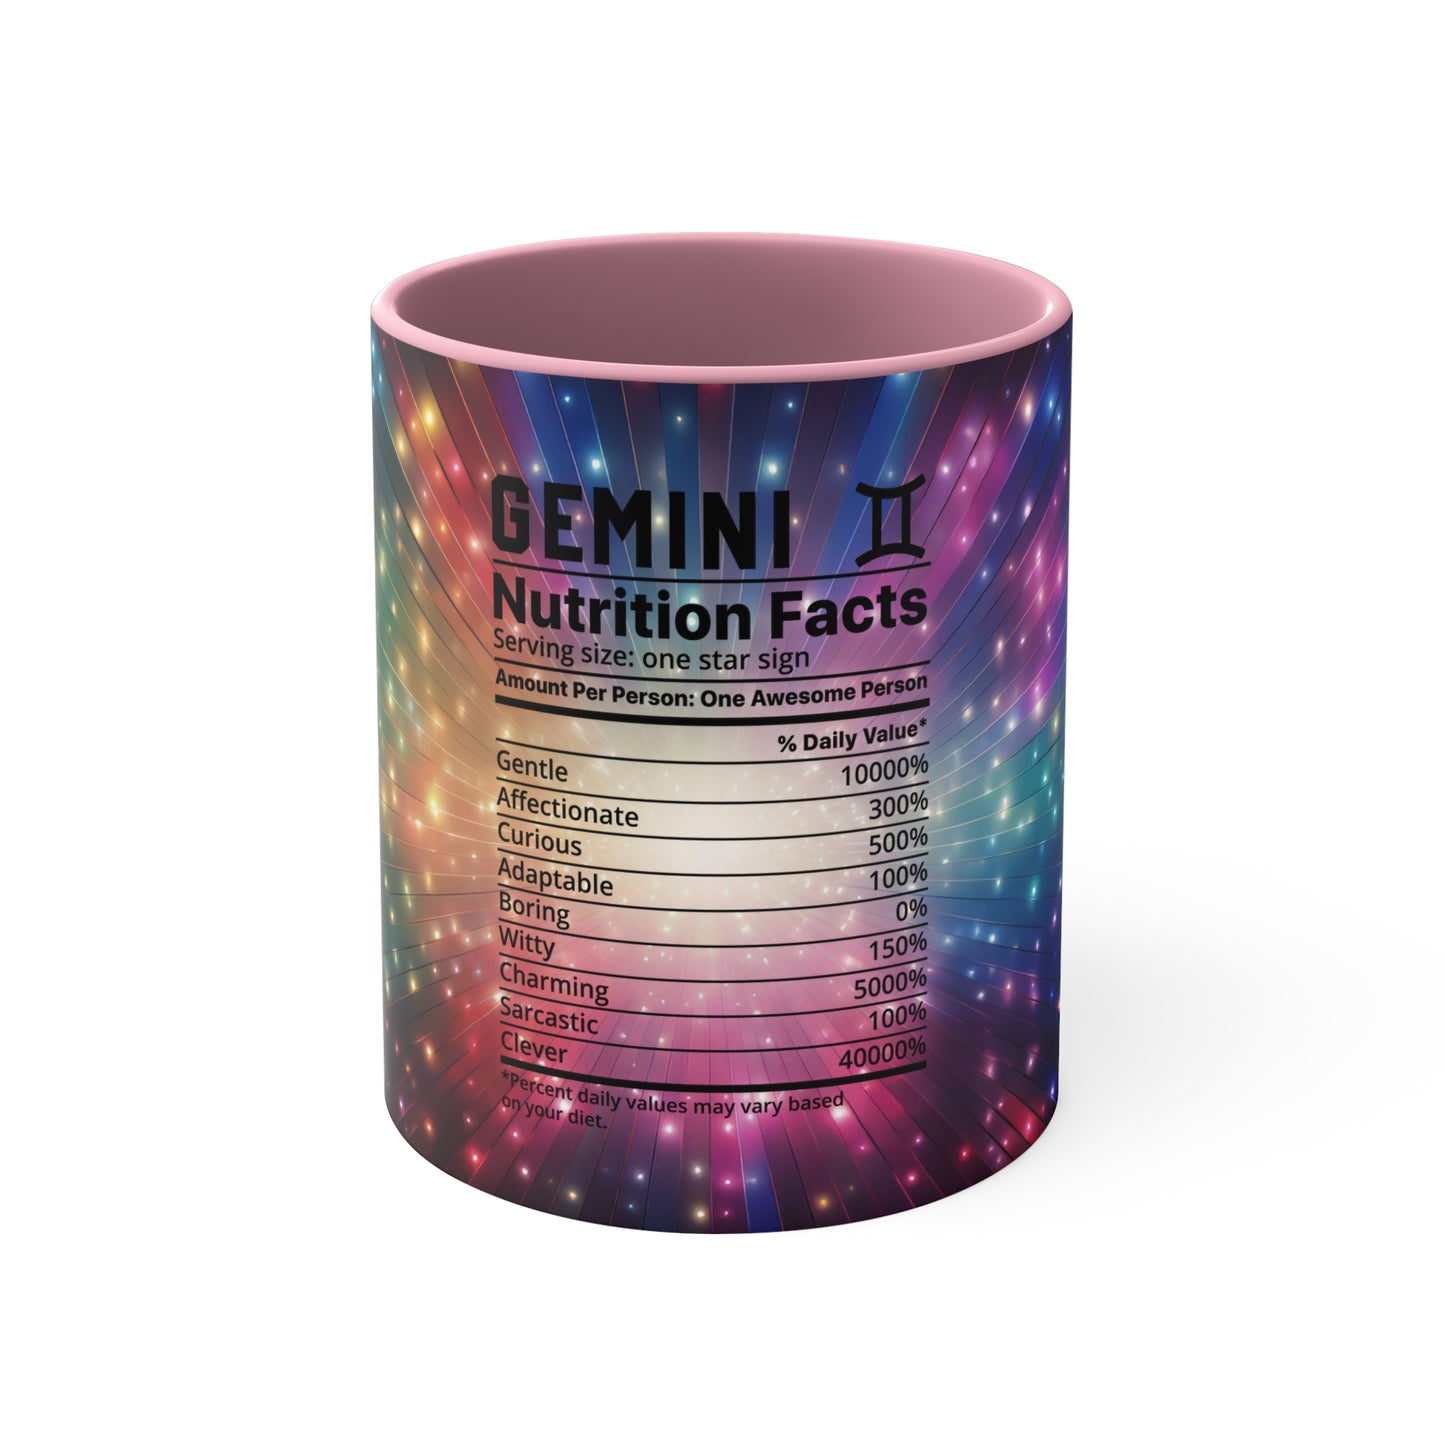 Gemini nutrition Accent Coffee Mug, 11oz